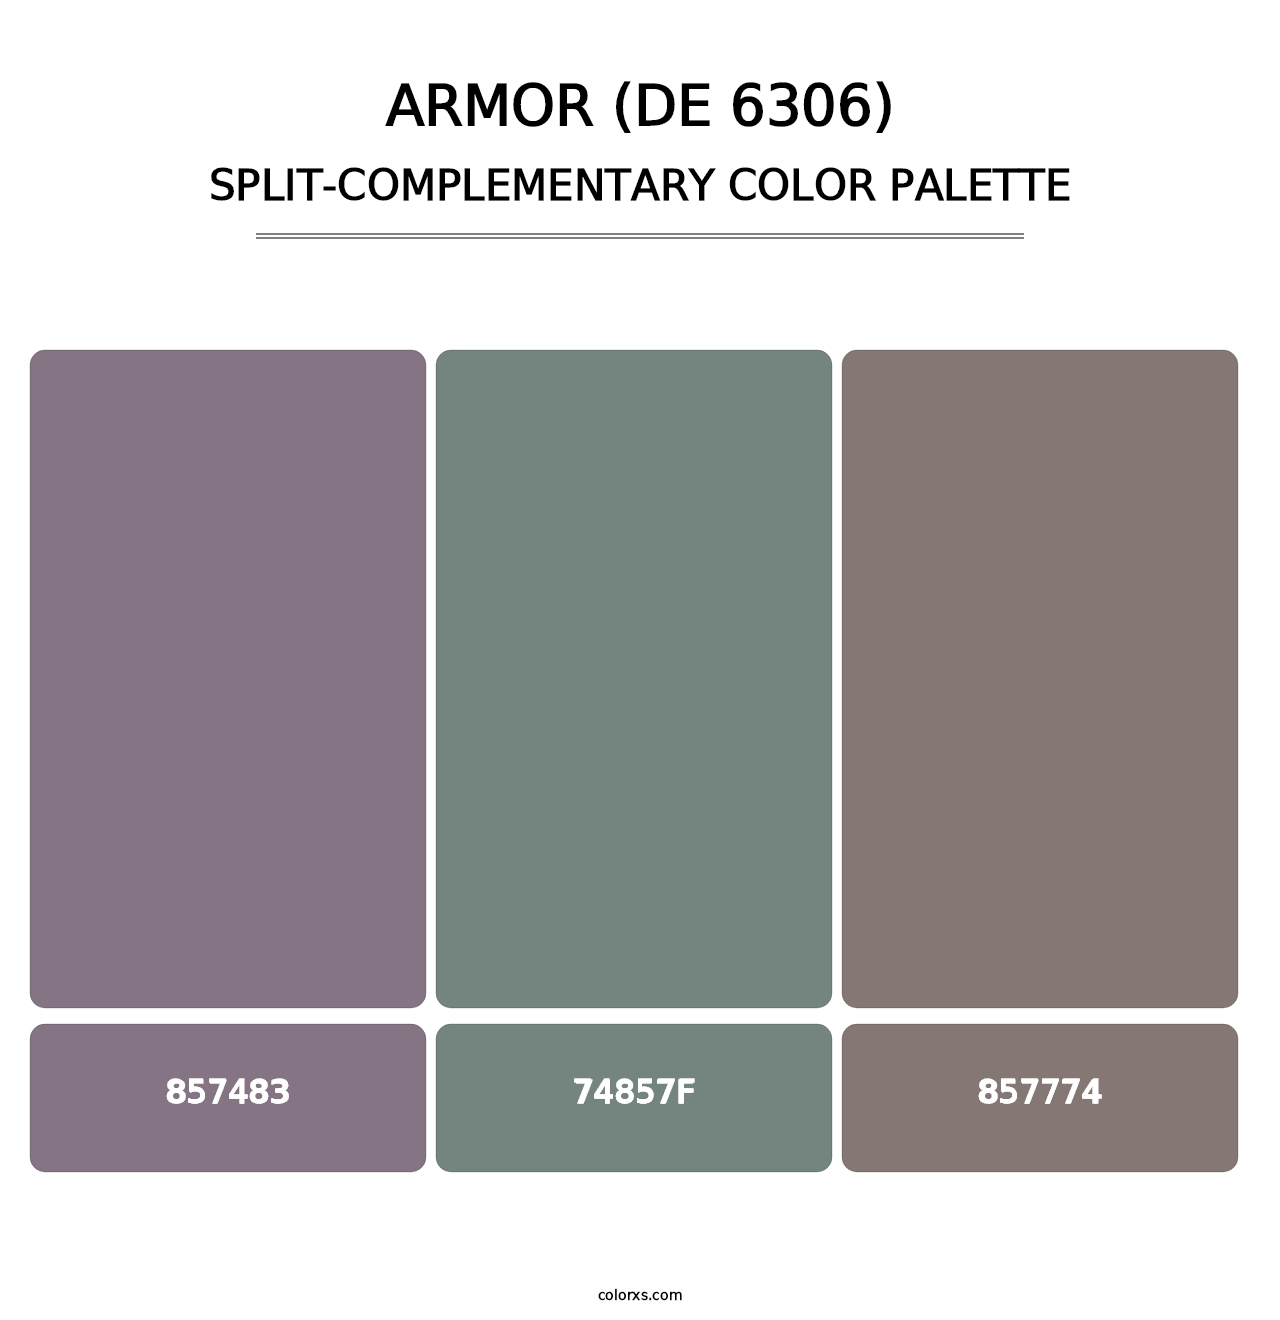 Armor (DE 6306) - Split-Complementary Color Palette